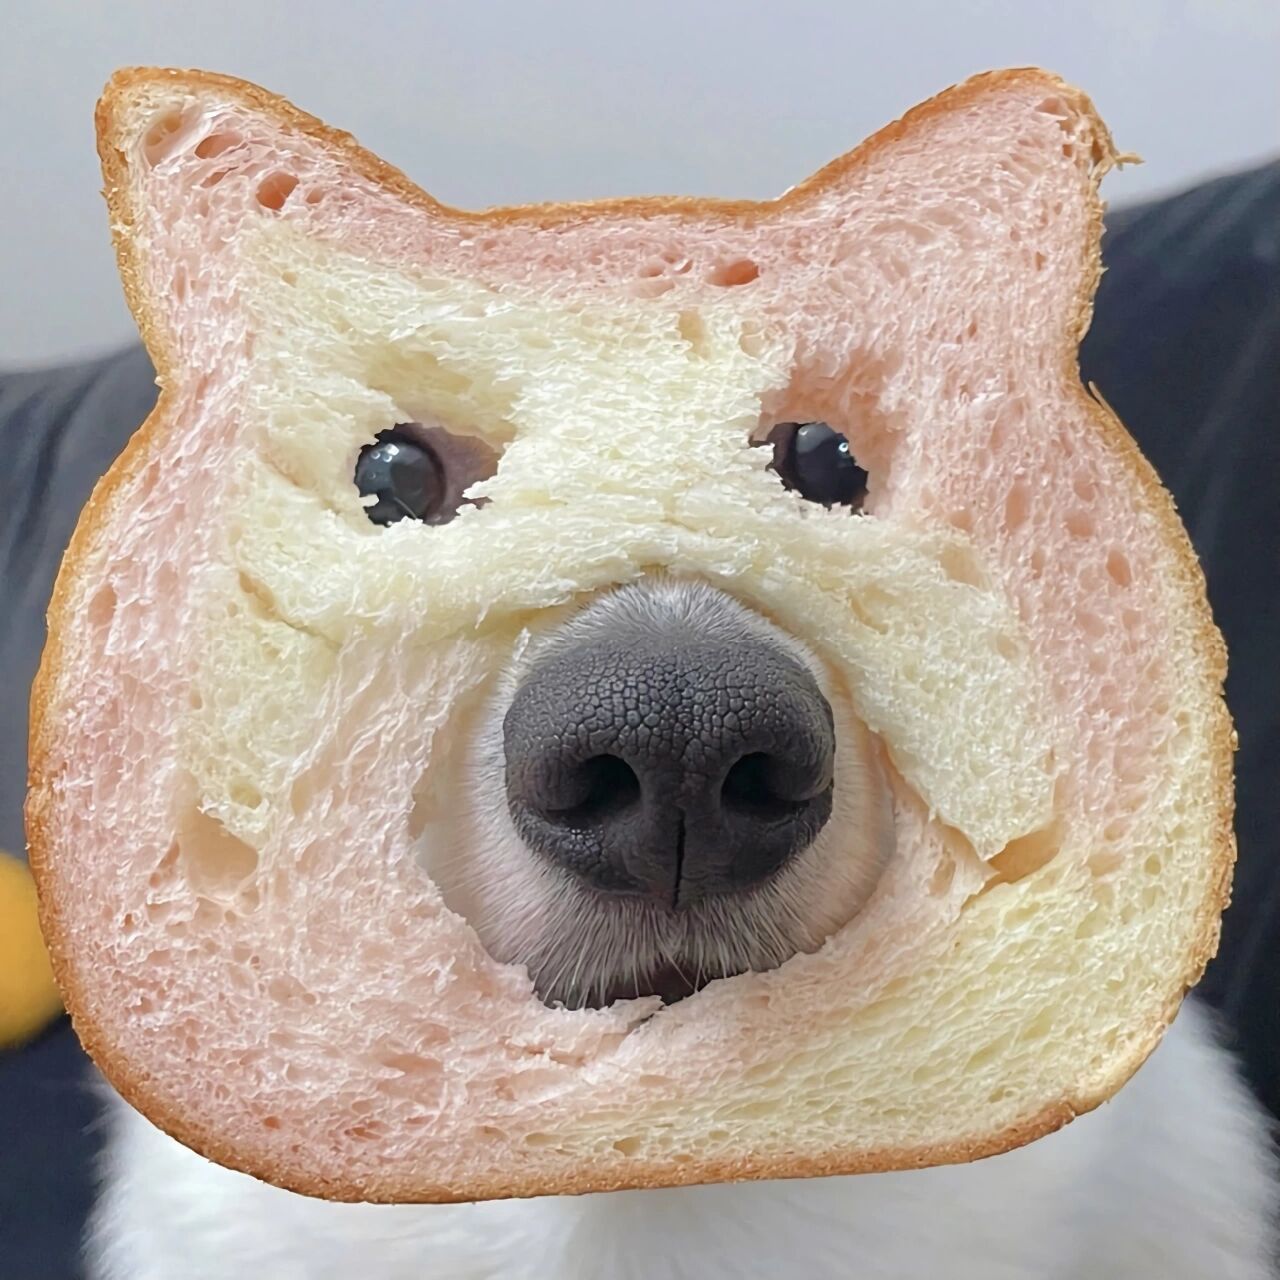 面包狗图片头像图片